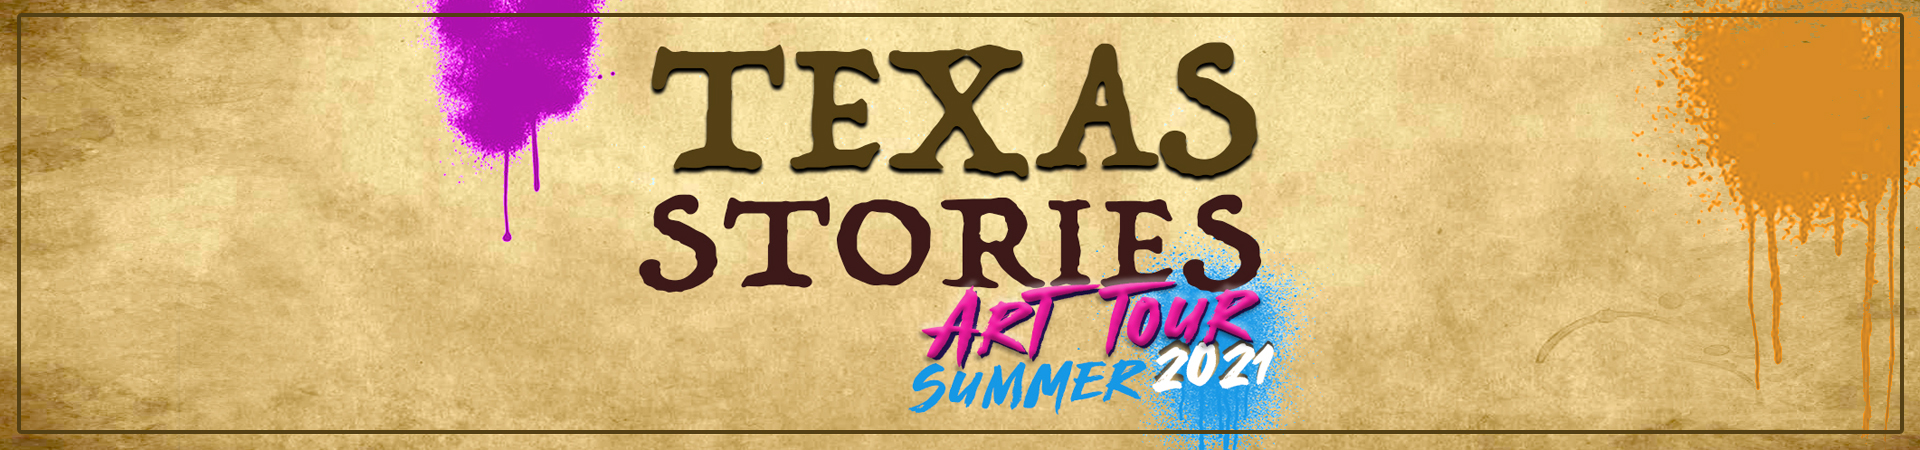 Texas Stories Art Tour, Summer 2021